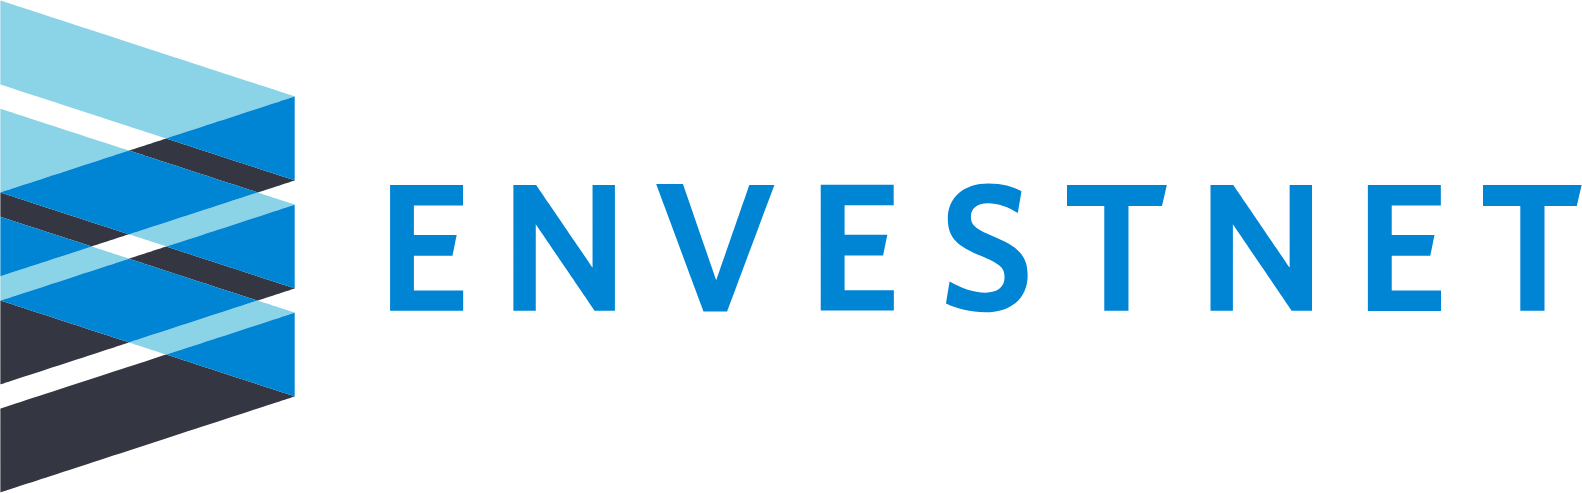 Envestnet logo large (transparent PNG)